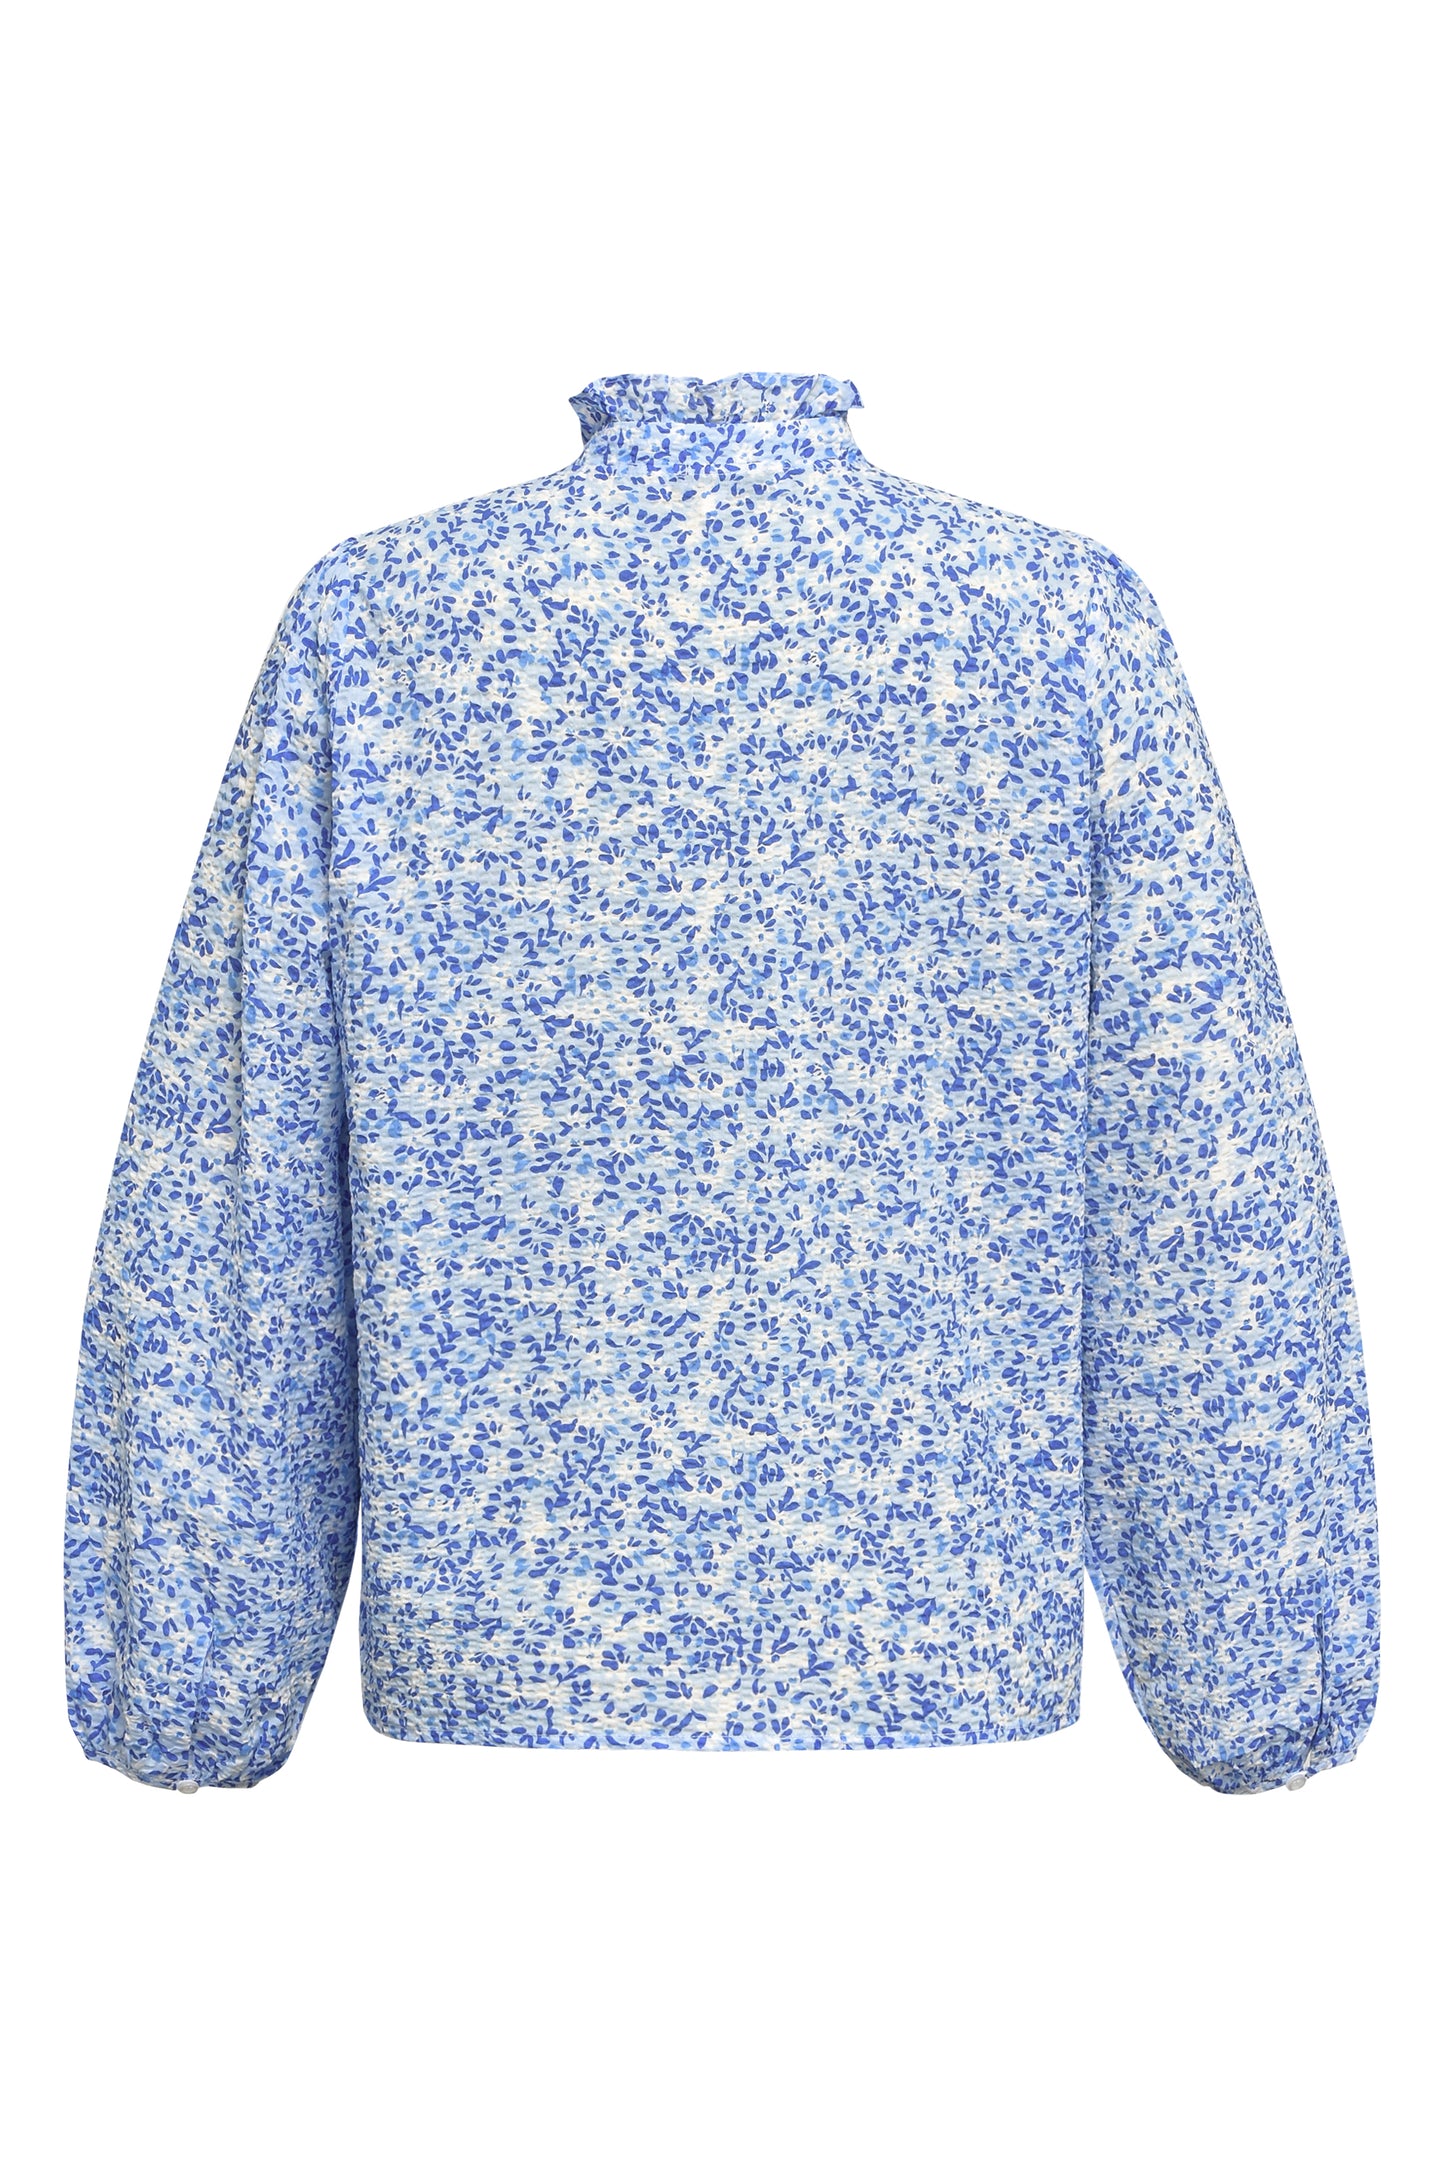 A-VIEW - Tiffany shirt - Blå